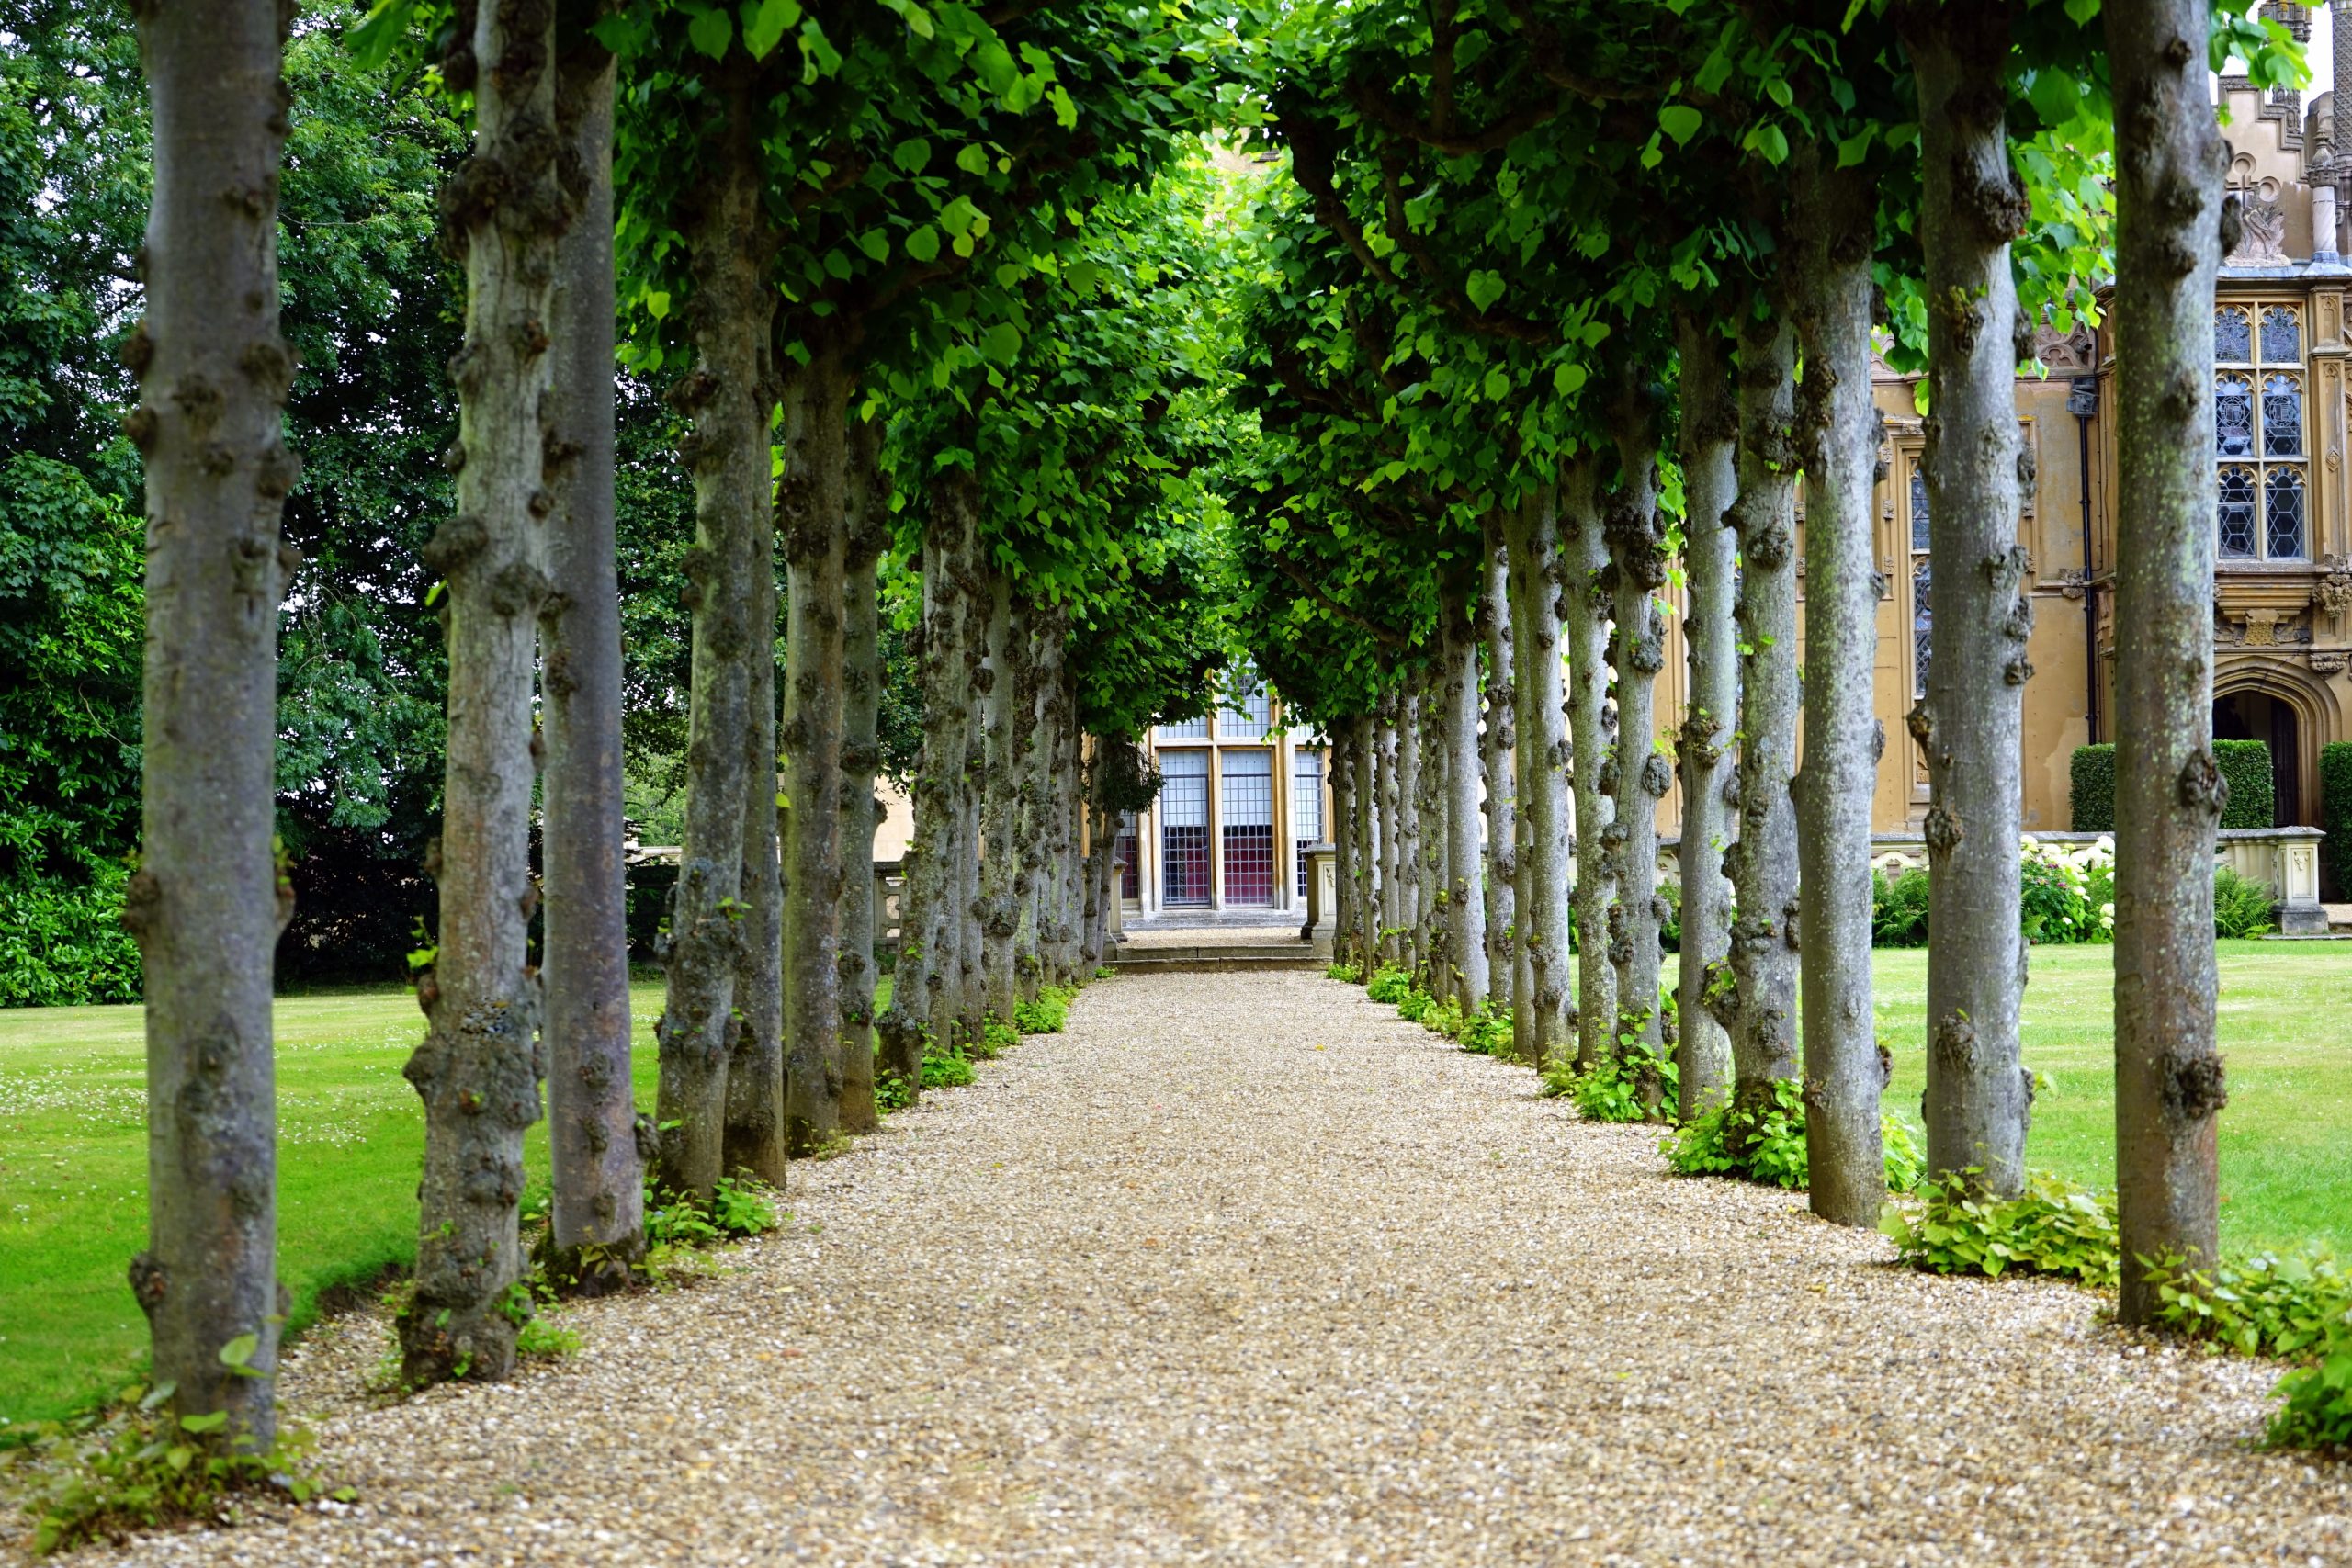 Treelined walkway